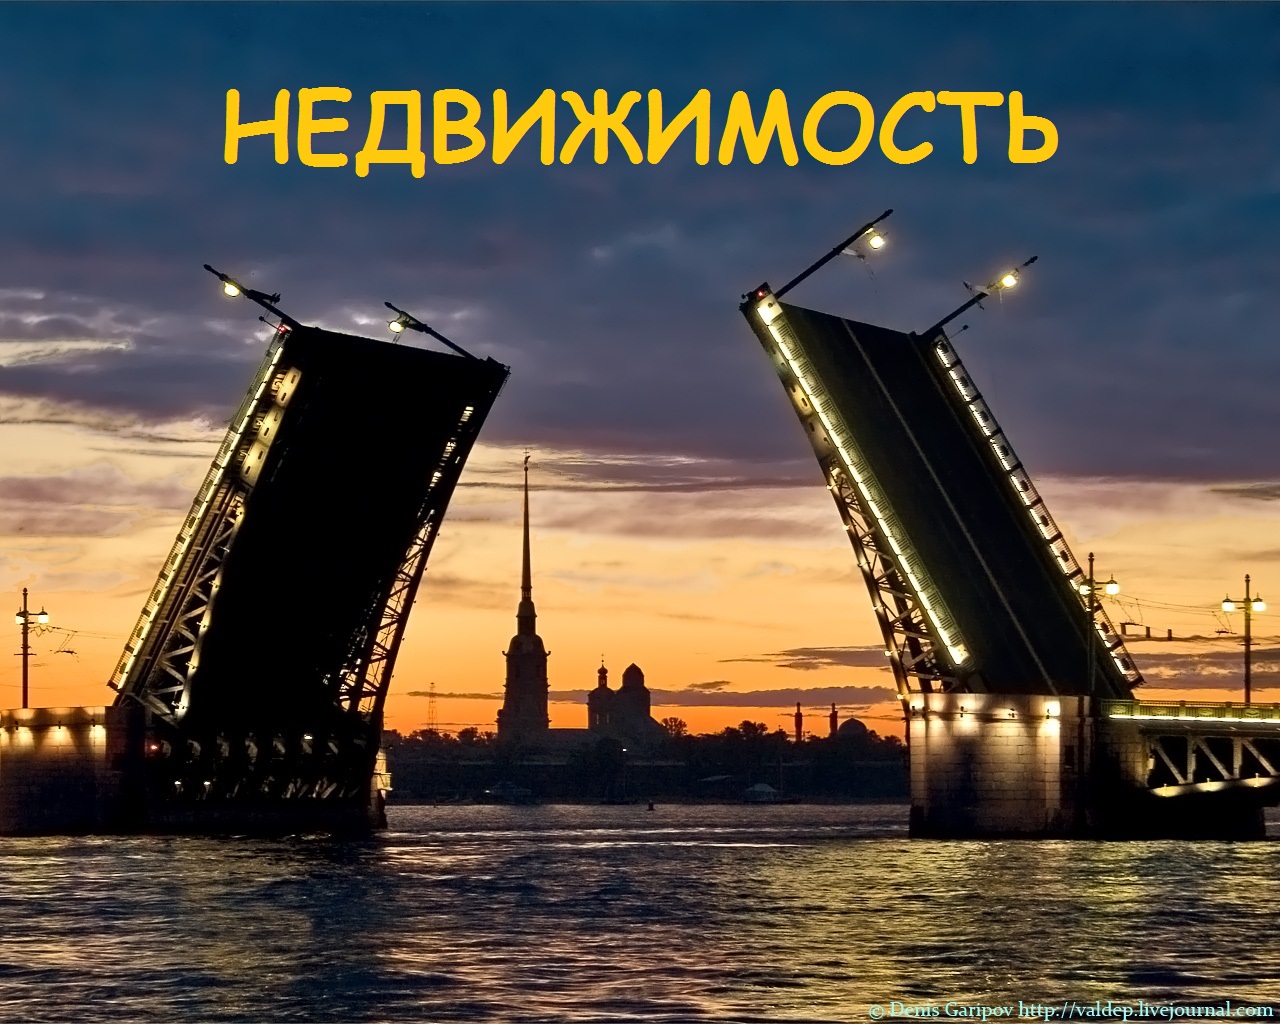 Недвижимость Санкт-Петербурга